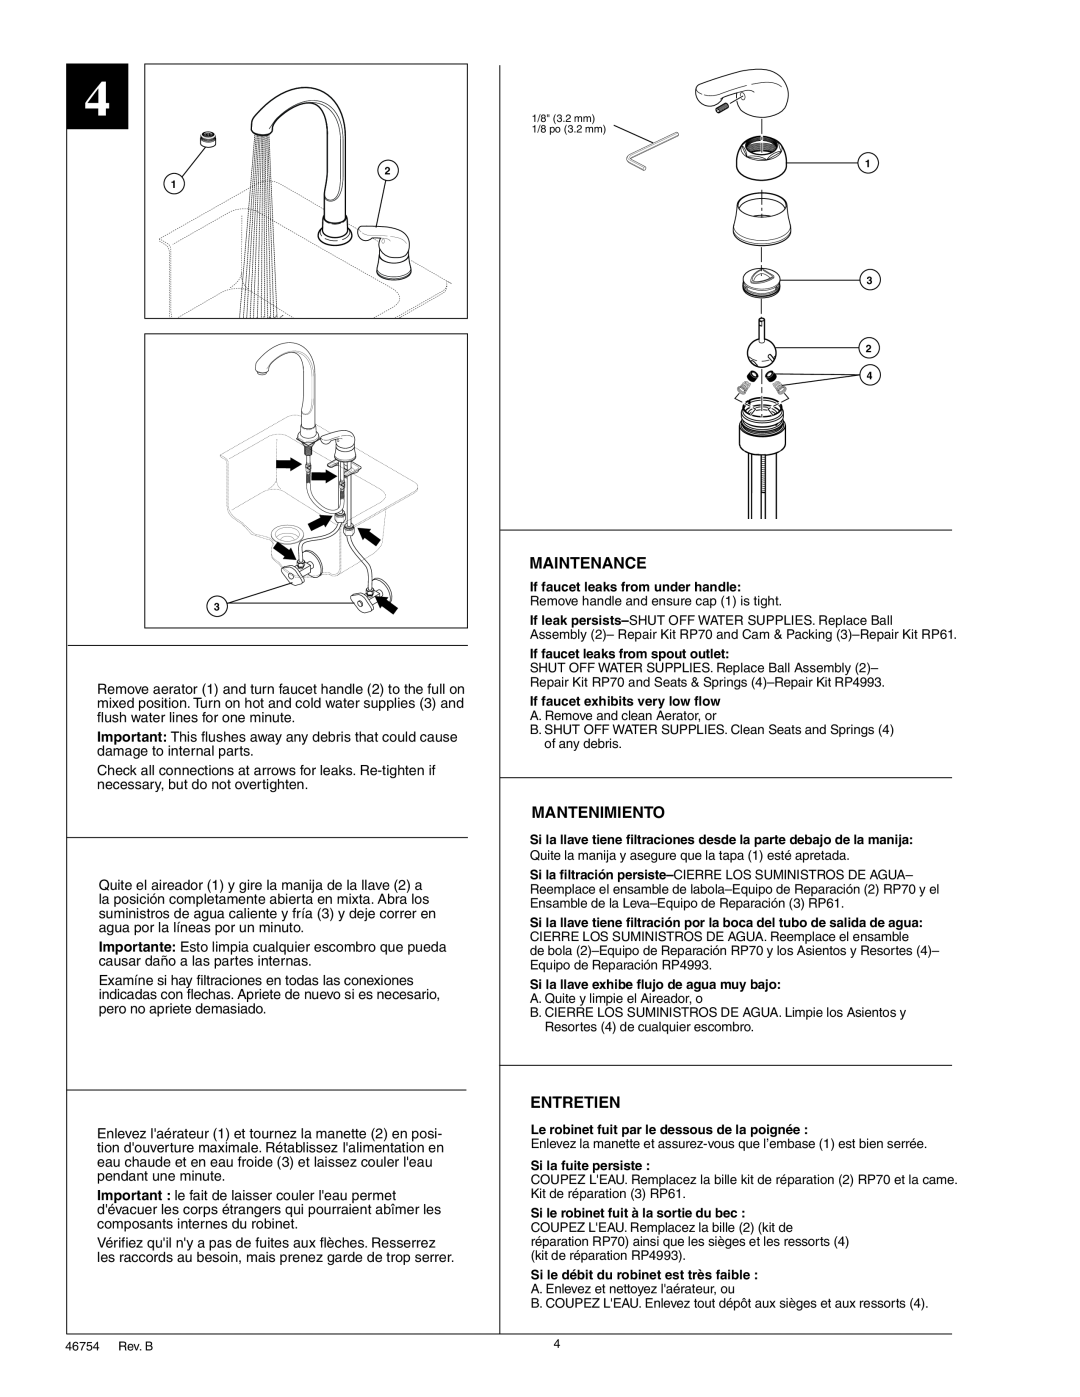 Delta RP31834 Maintenance, Mantenimiento, Entretien, If faucet leaks from spout outlet, If faucet exhibits very low flow 